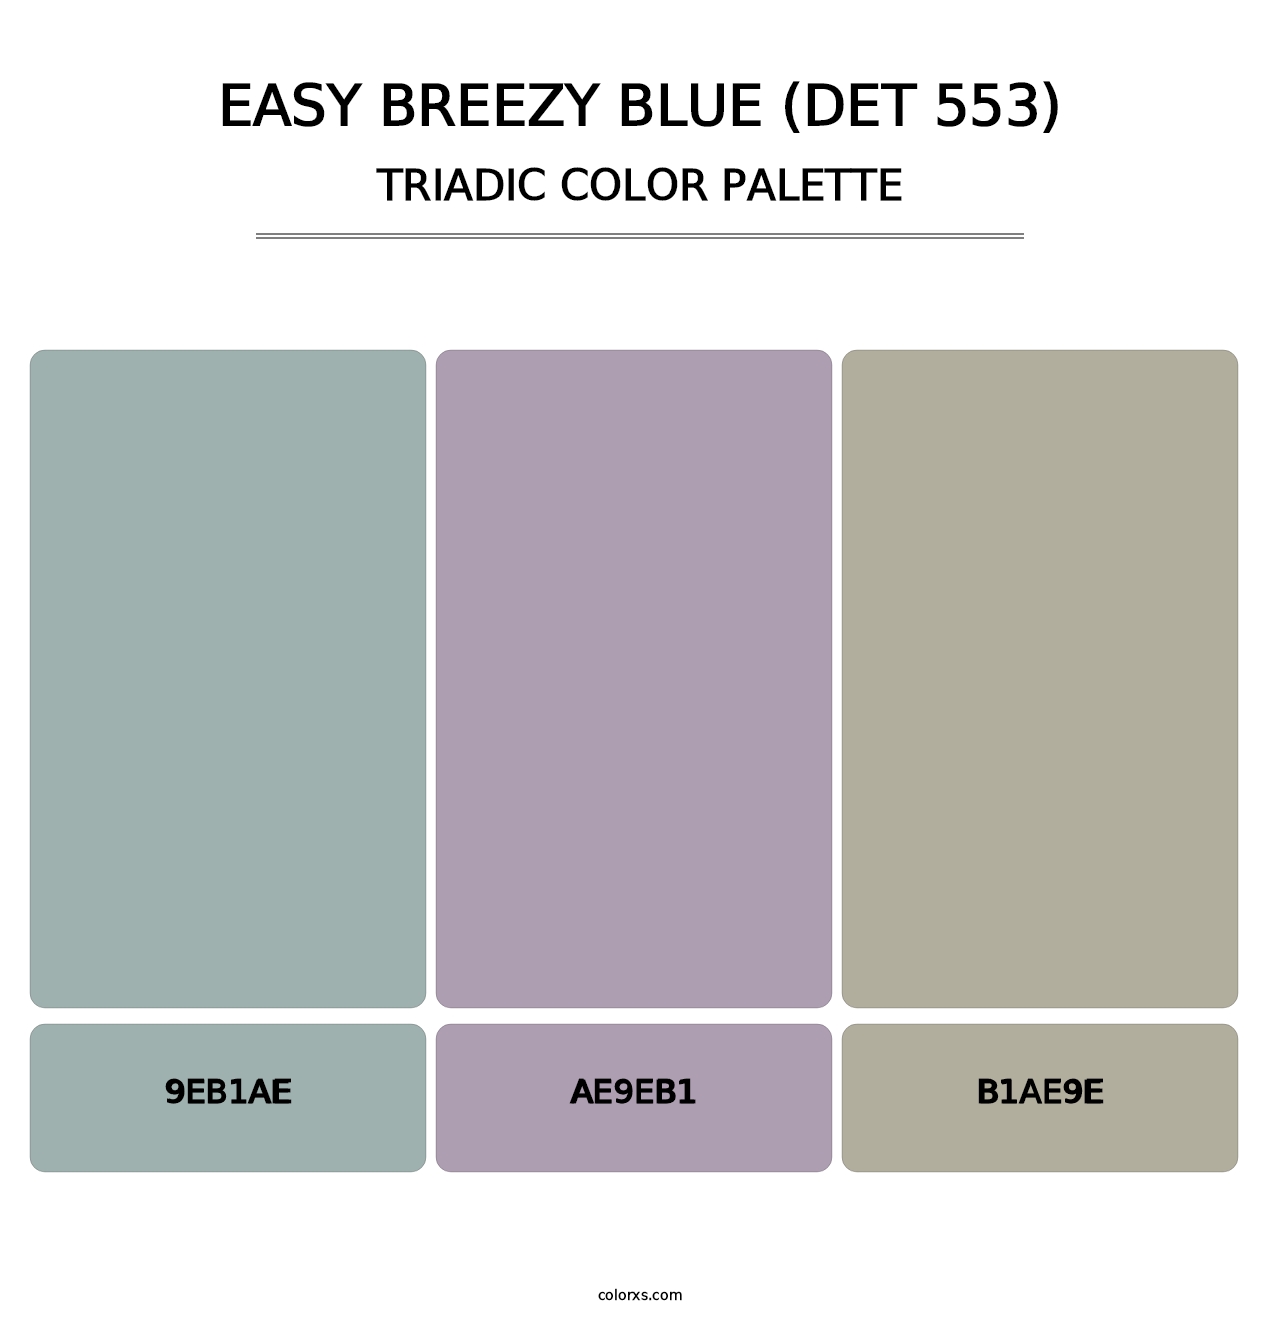 Easy Breezy Blue (DET 553) - Triadic Color Palette